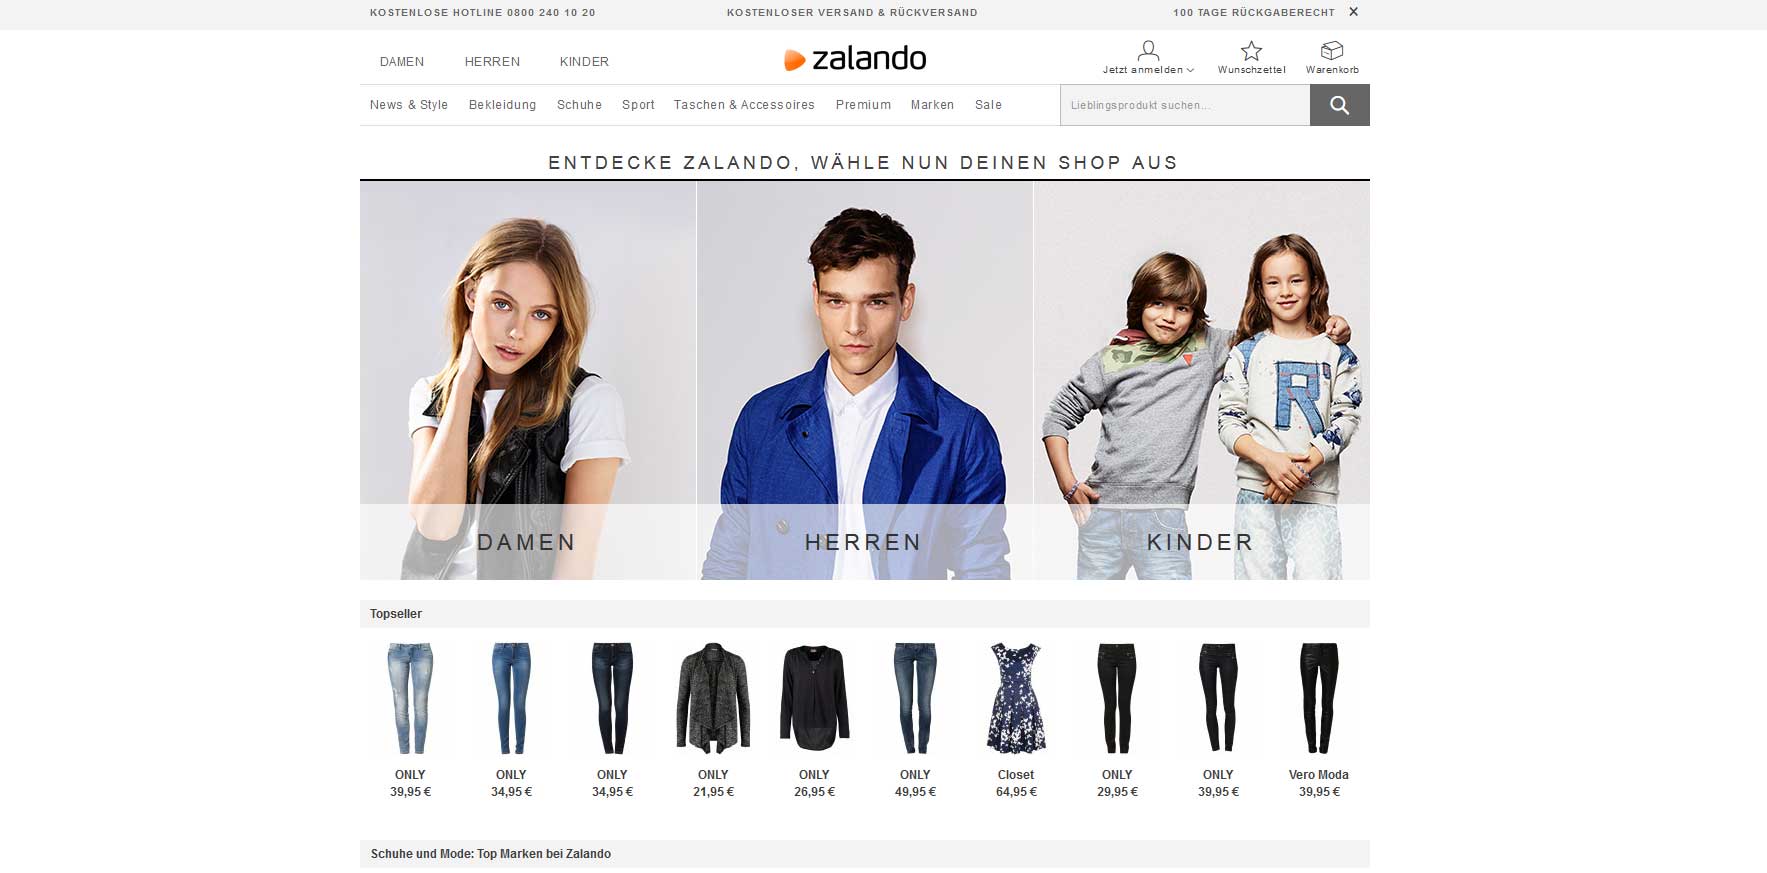 Zalando 2014 mit operativen Gewinn - Bildquelle: Zalando.de